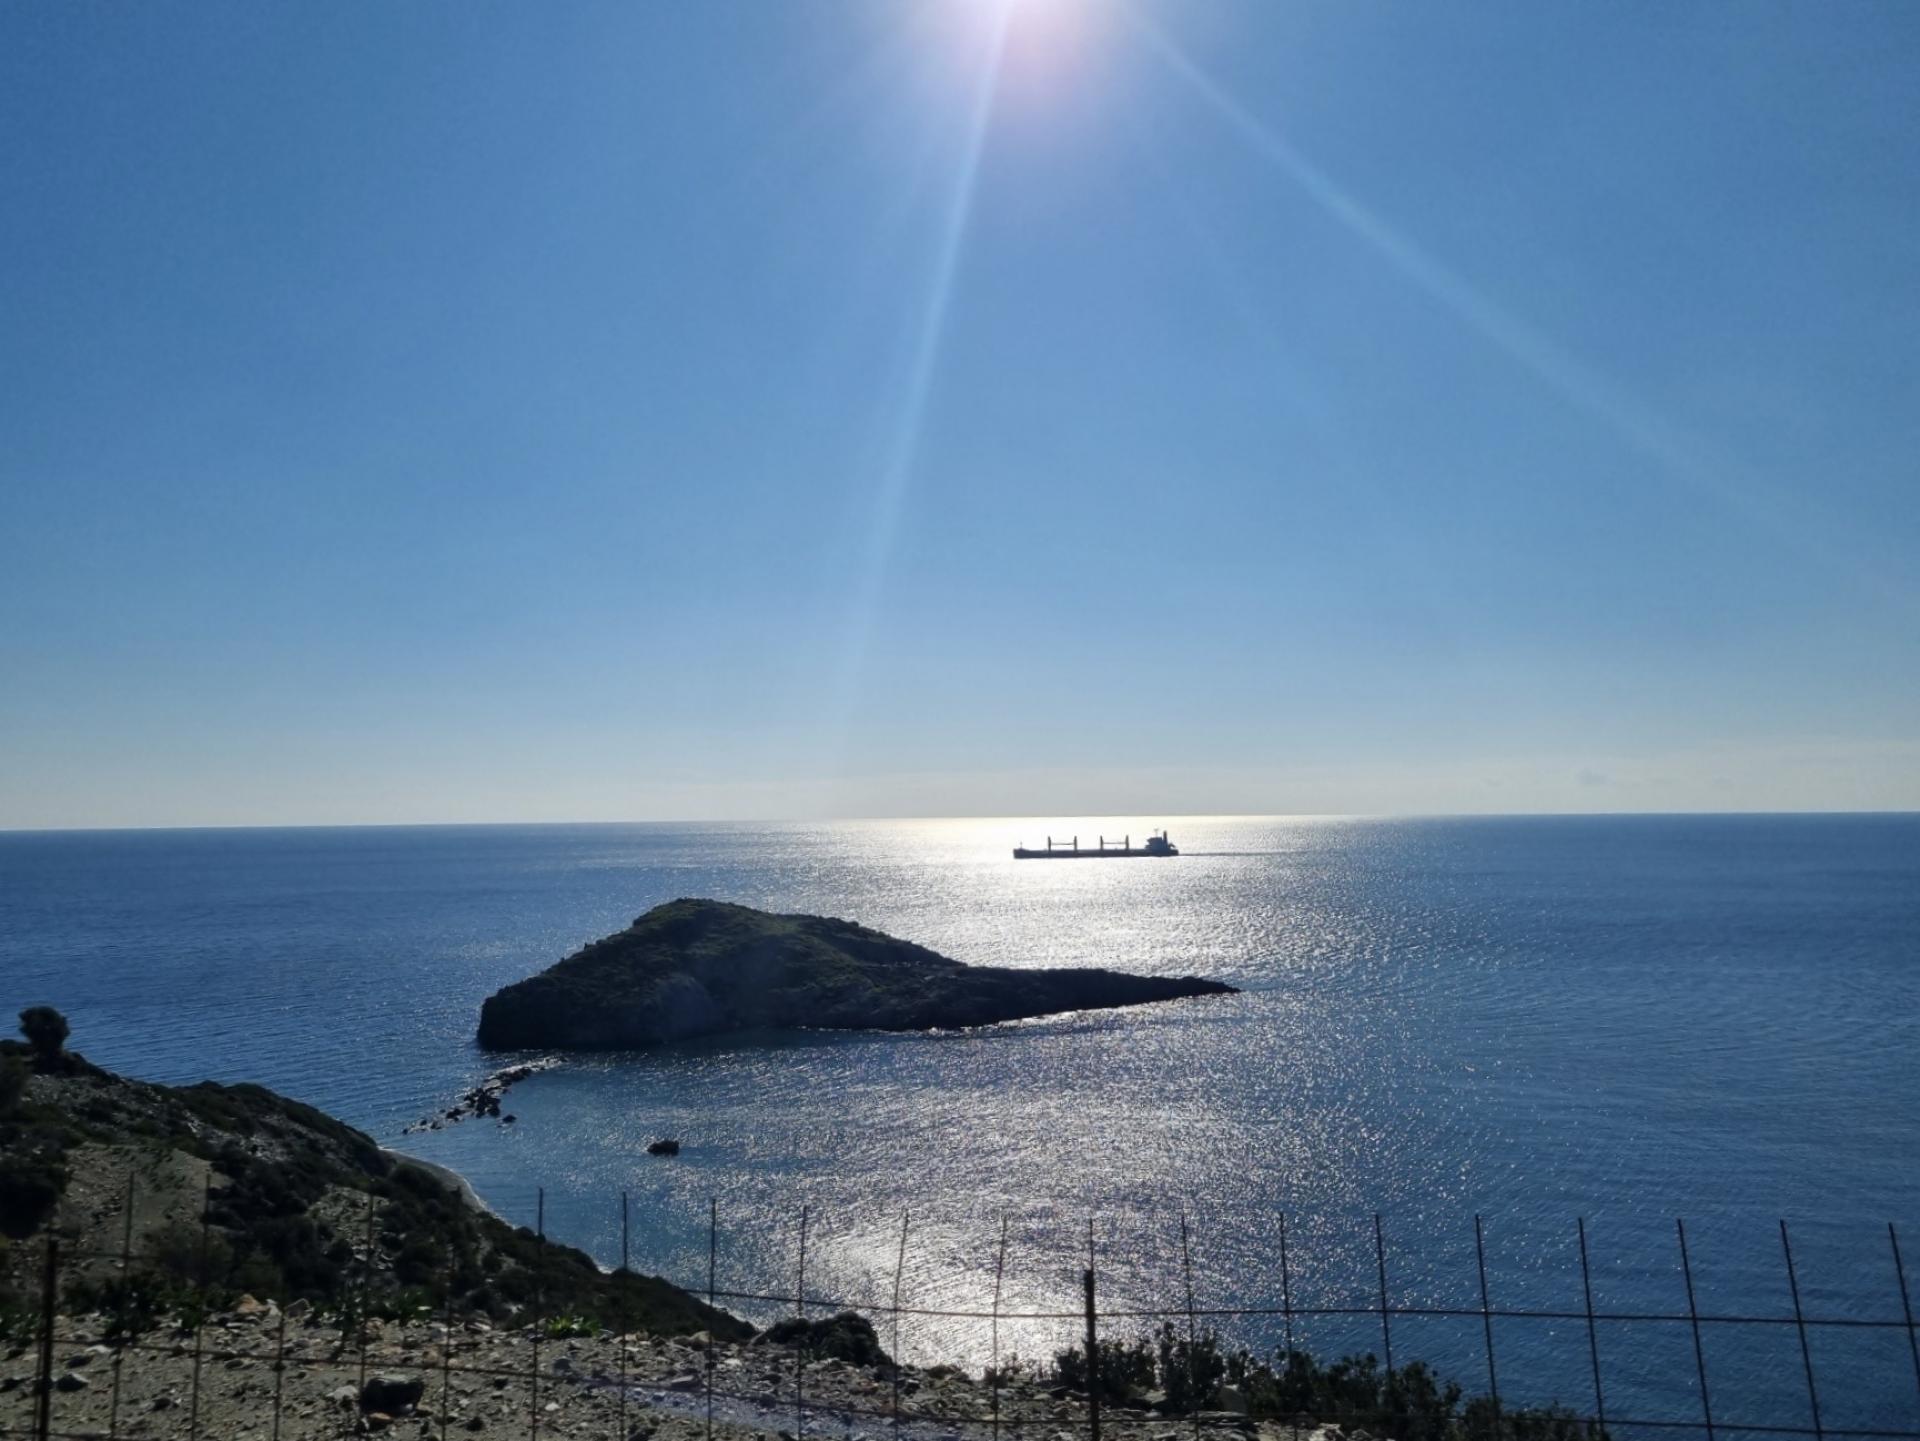 Πώληση οικοπέδου στα Καλά Λιμάνια Κρήτης με θέα την θάλασσα 